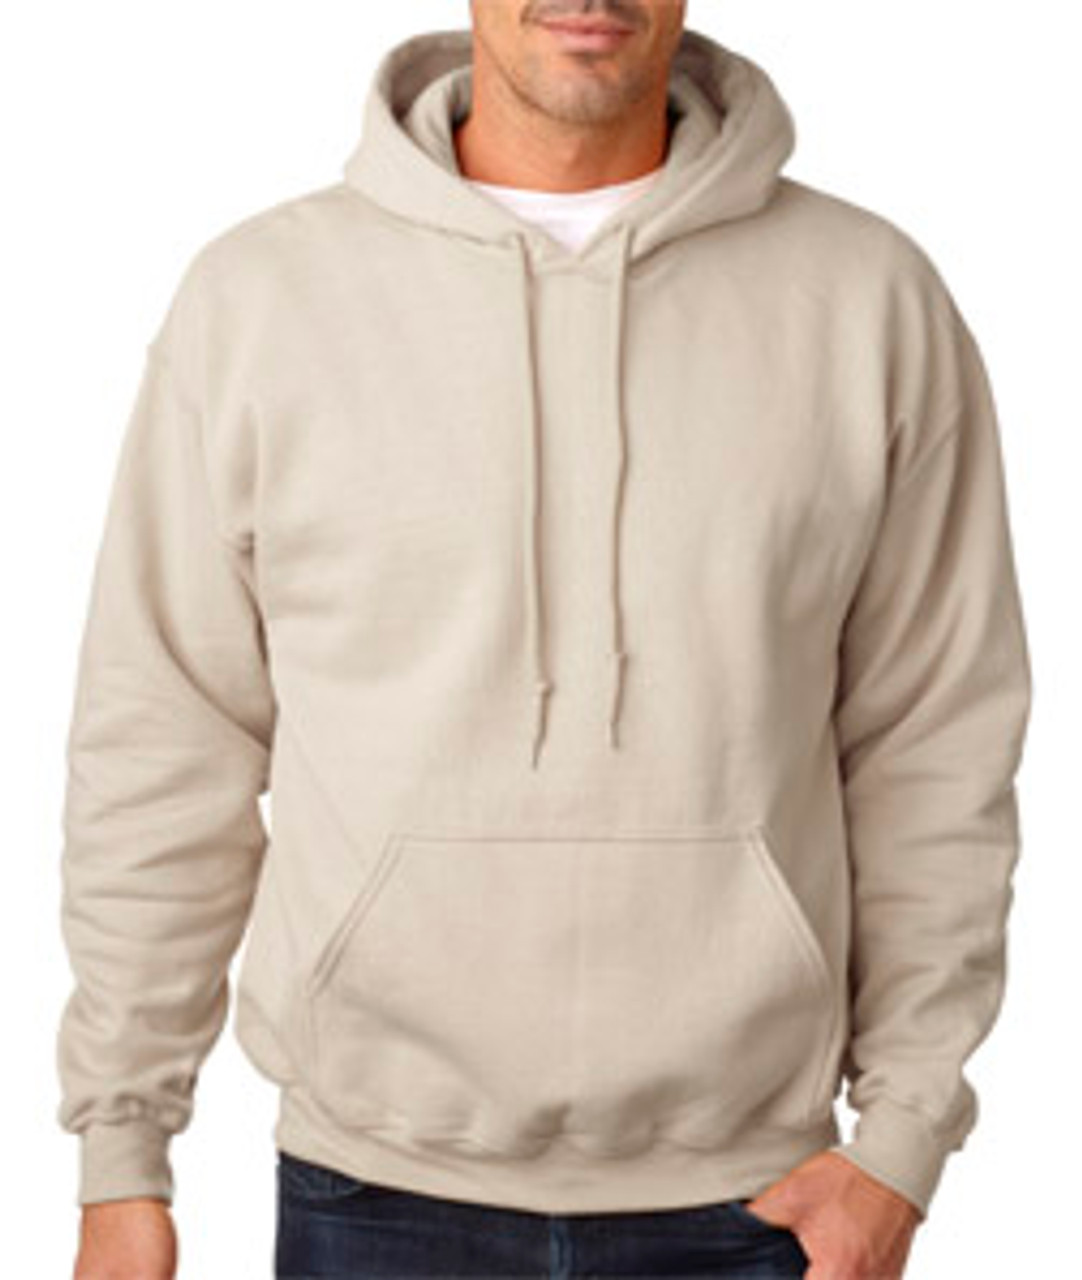 Custom Printed Hooded Sweatshirts | Custom Hoodies